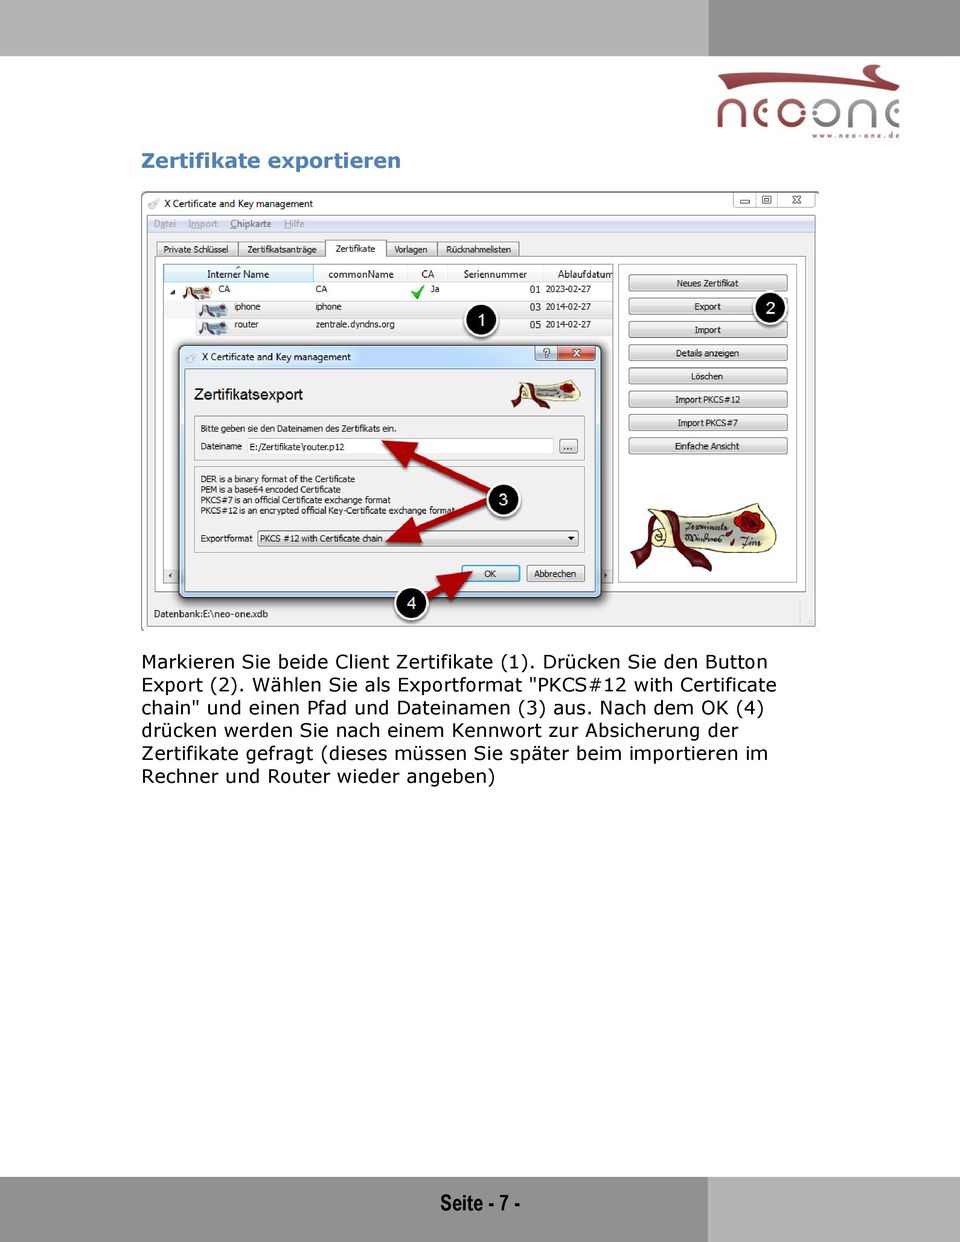 Wählen Sie als Exportformat "PKCS#12 with Certificate chain" und einen Pfad und Dateinamen (3)